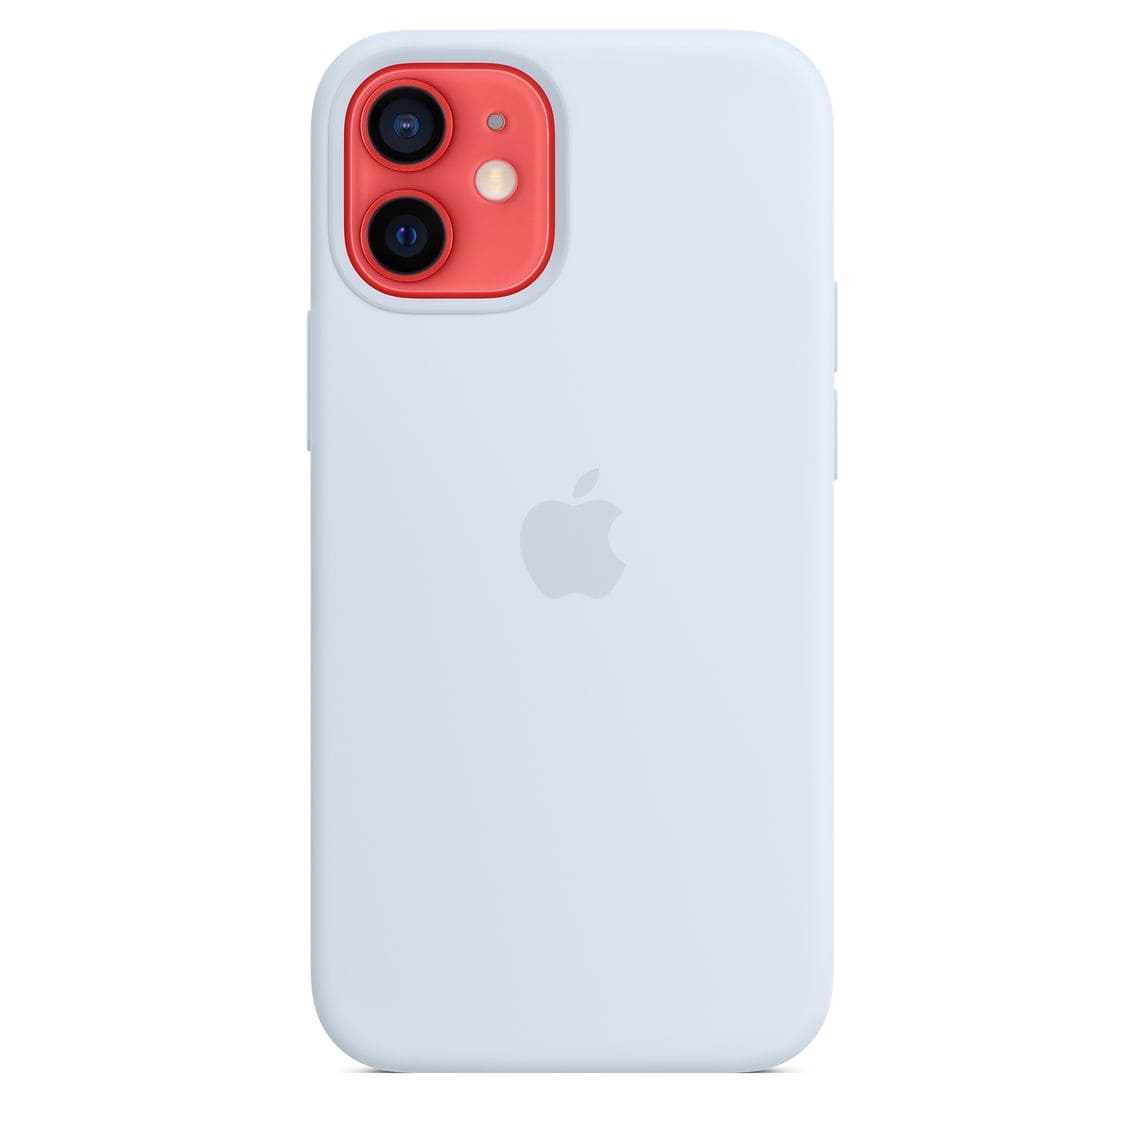 Чехол для смартфона Apple MagSafe для iPhone 12 mini, cиликон, дымчато-голубой